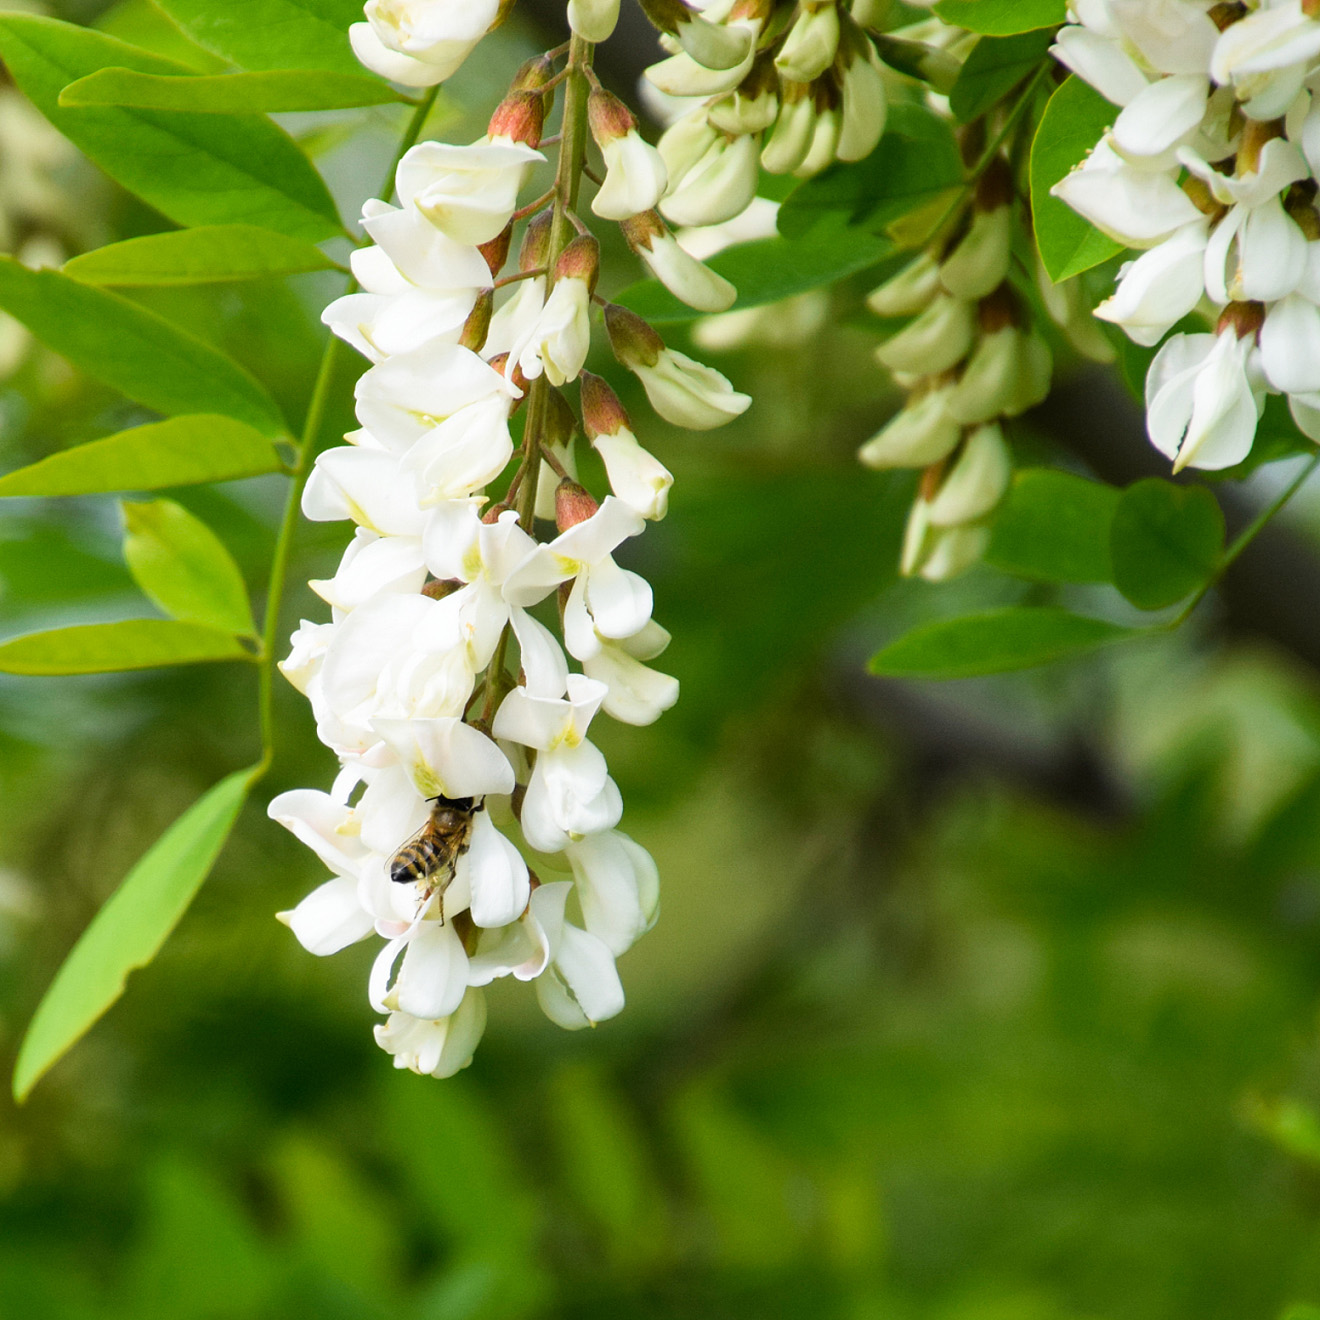 Uva bianca di acacia in fiore.Fiori bianchi di acacia spinosa, impollinati dalle api.